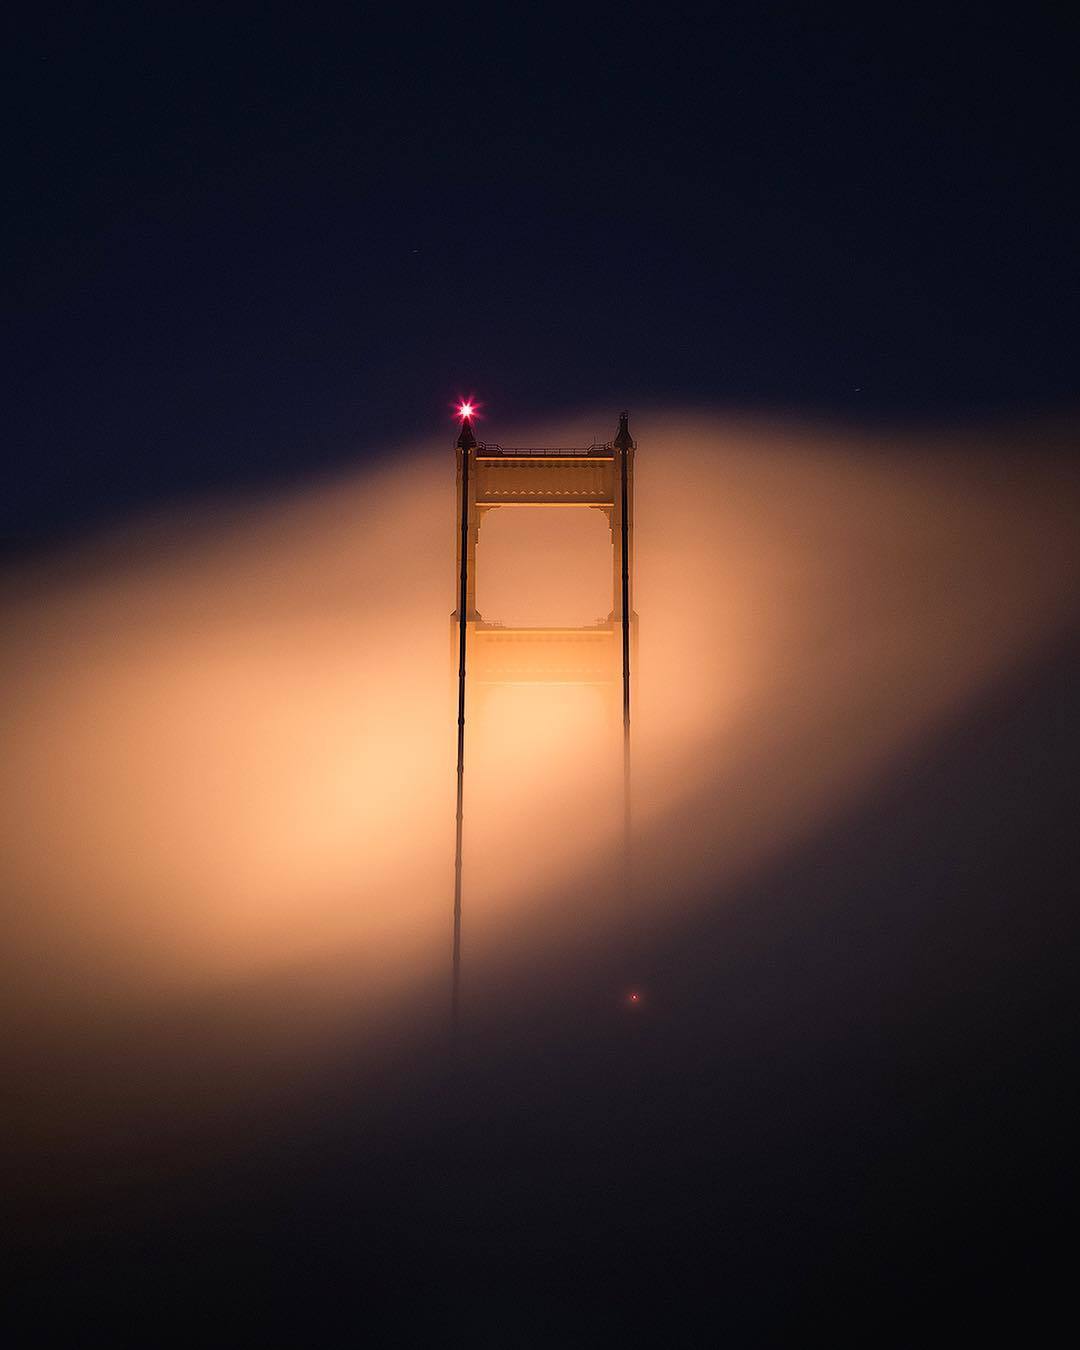  迷雾中的金门大桥，来自摄影师Michael Shainblum。 